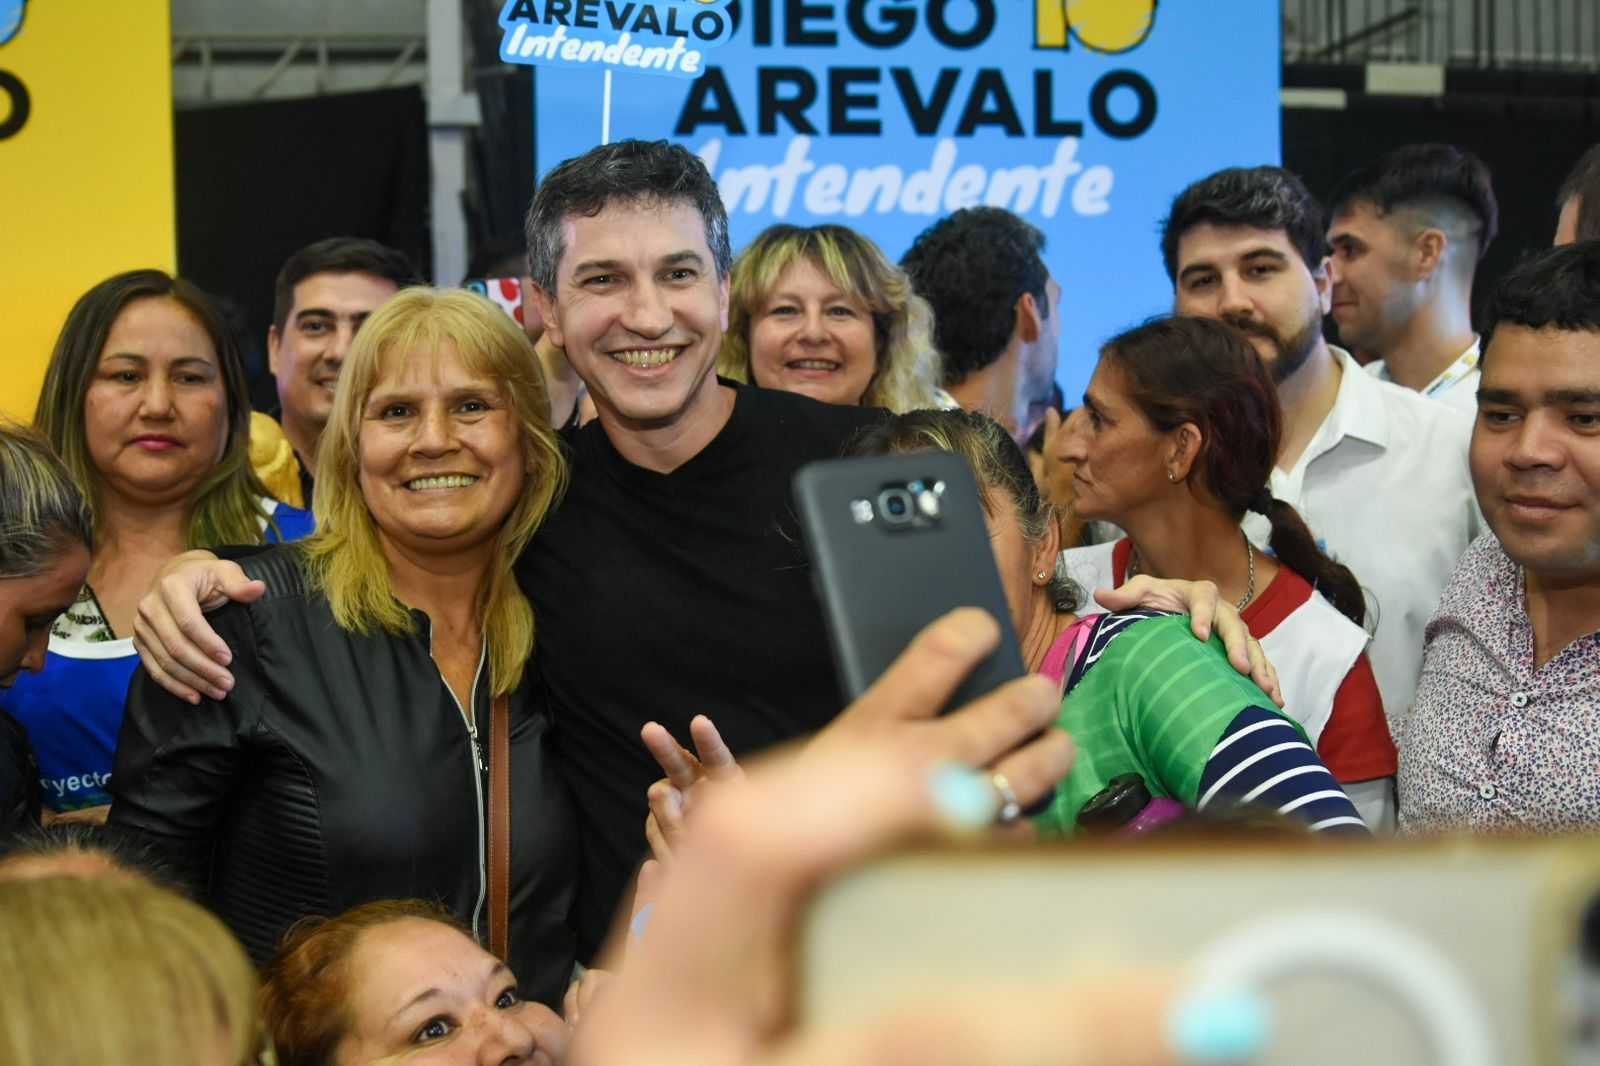 Diego Arevalo, precandidato a Intendente:  “El eje de nuestras decisiones en Resistencia será con las personas y para las personas”